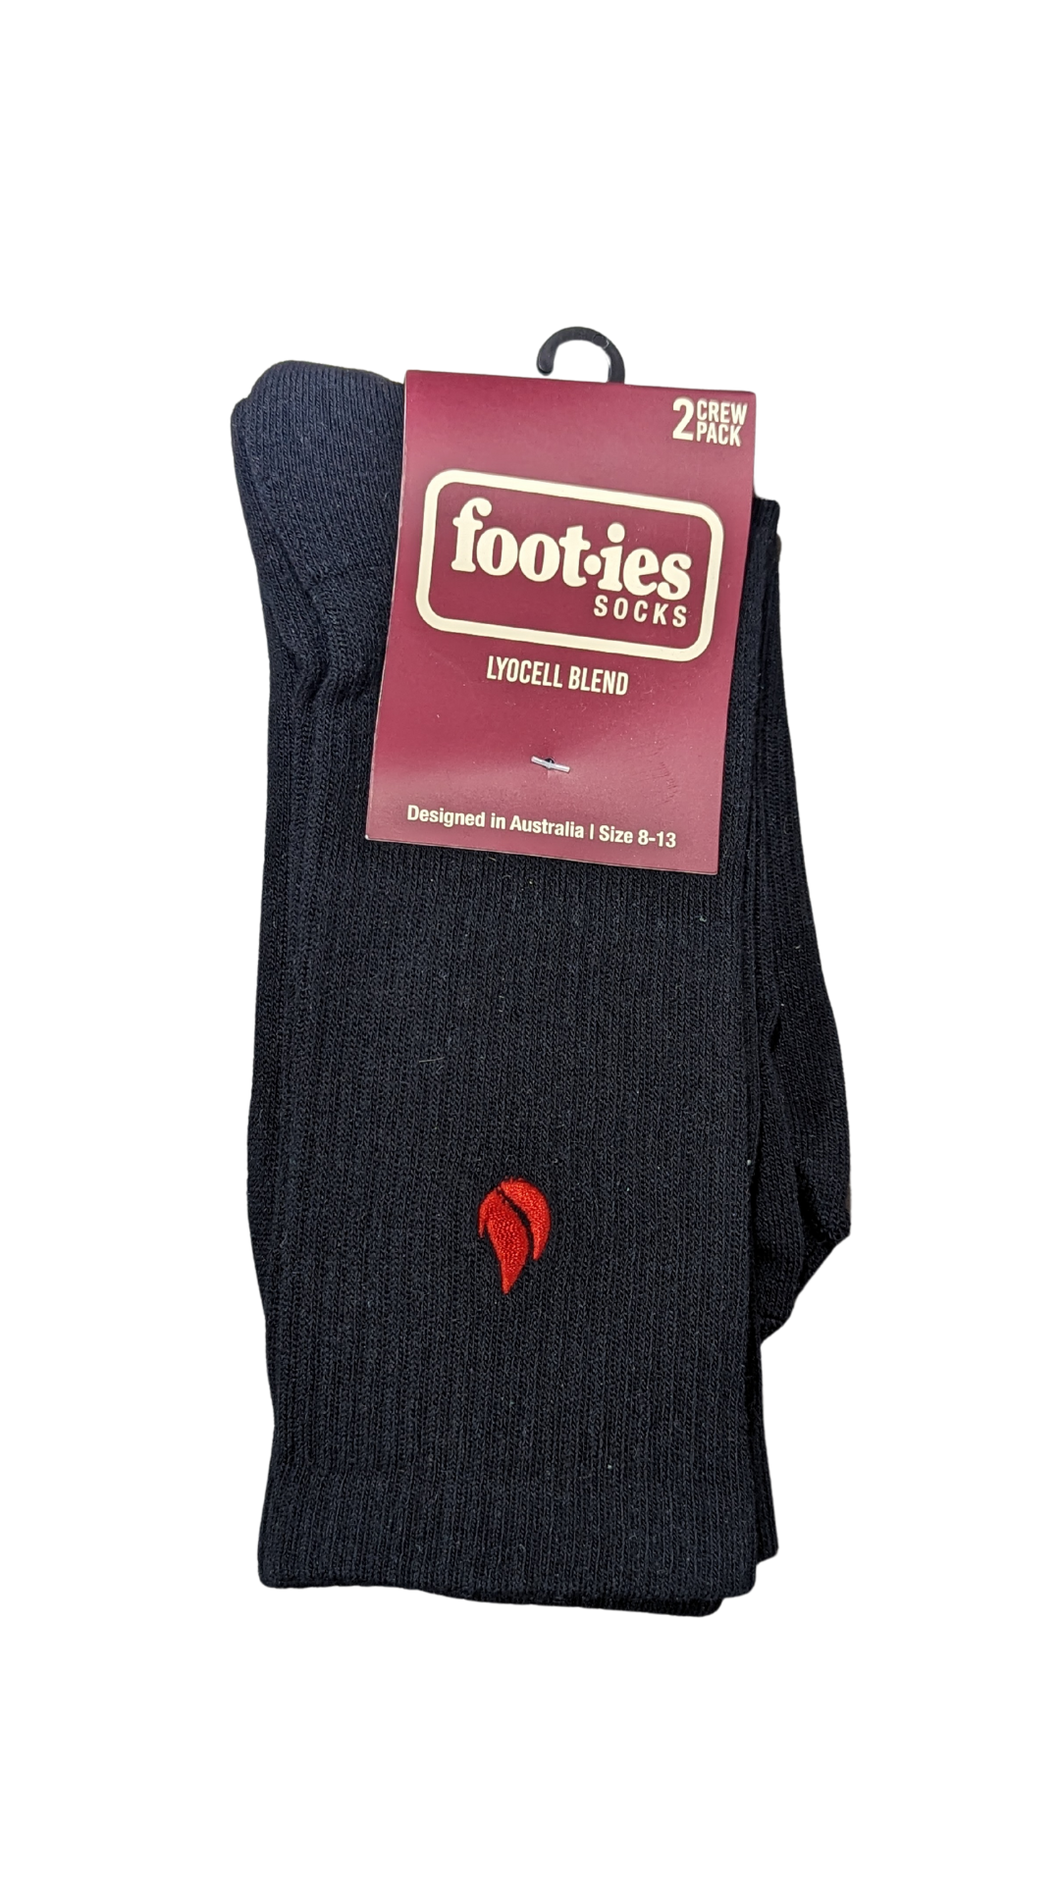 Foot-ies Blaze 2 Pack Socks - Black